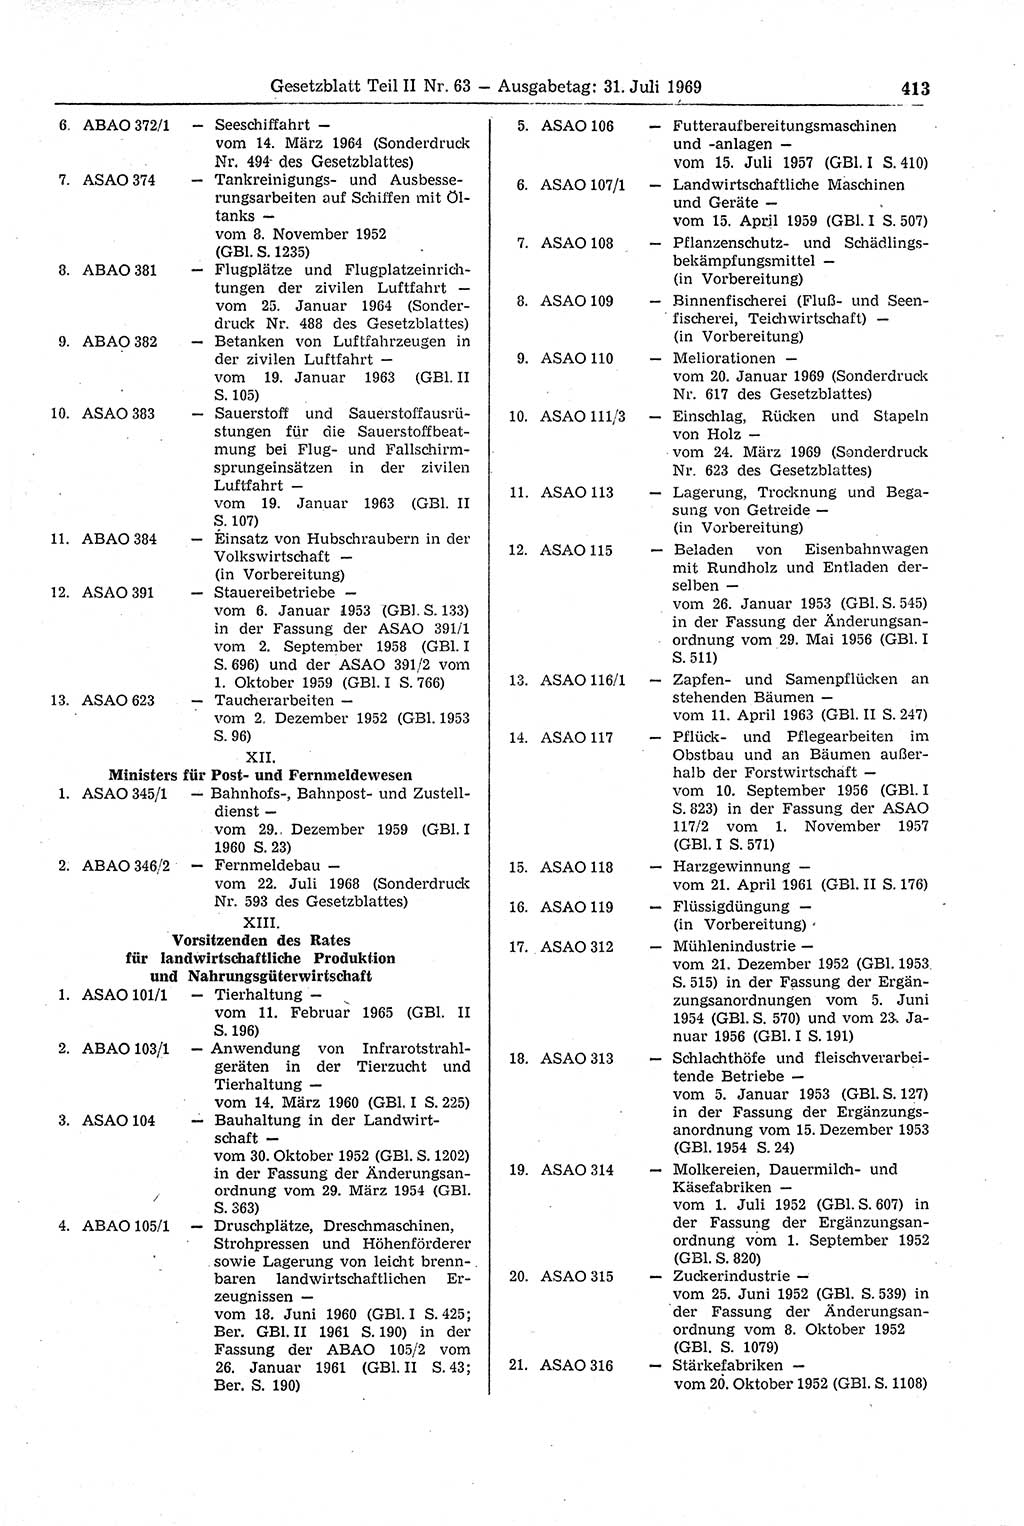 Gesetzblatt (GBl.) der Deutschen Demokratischen Republik (DDR) Teil ⅠⅠ 1969, Seite 413 (GBl. DDR ⅠⅠ 1969, S. 413)